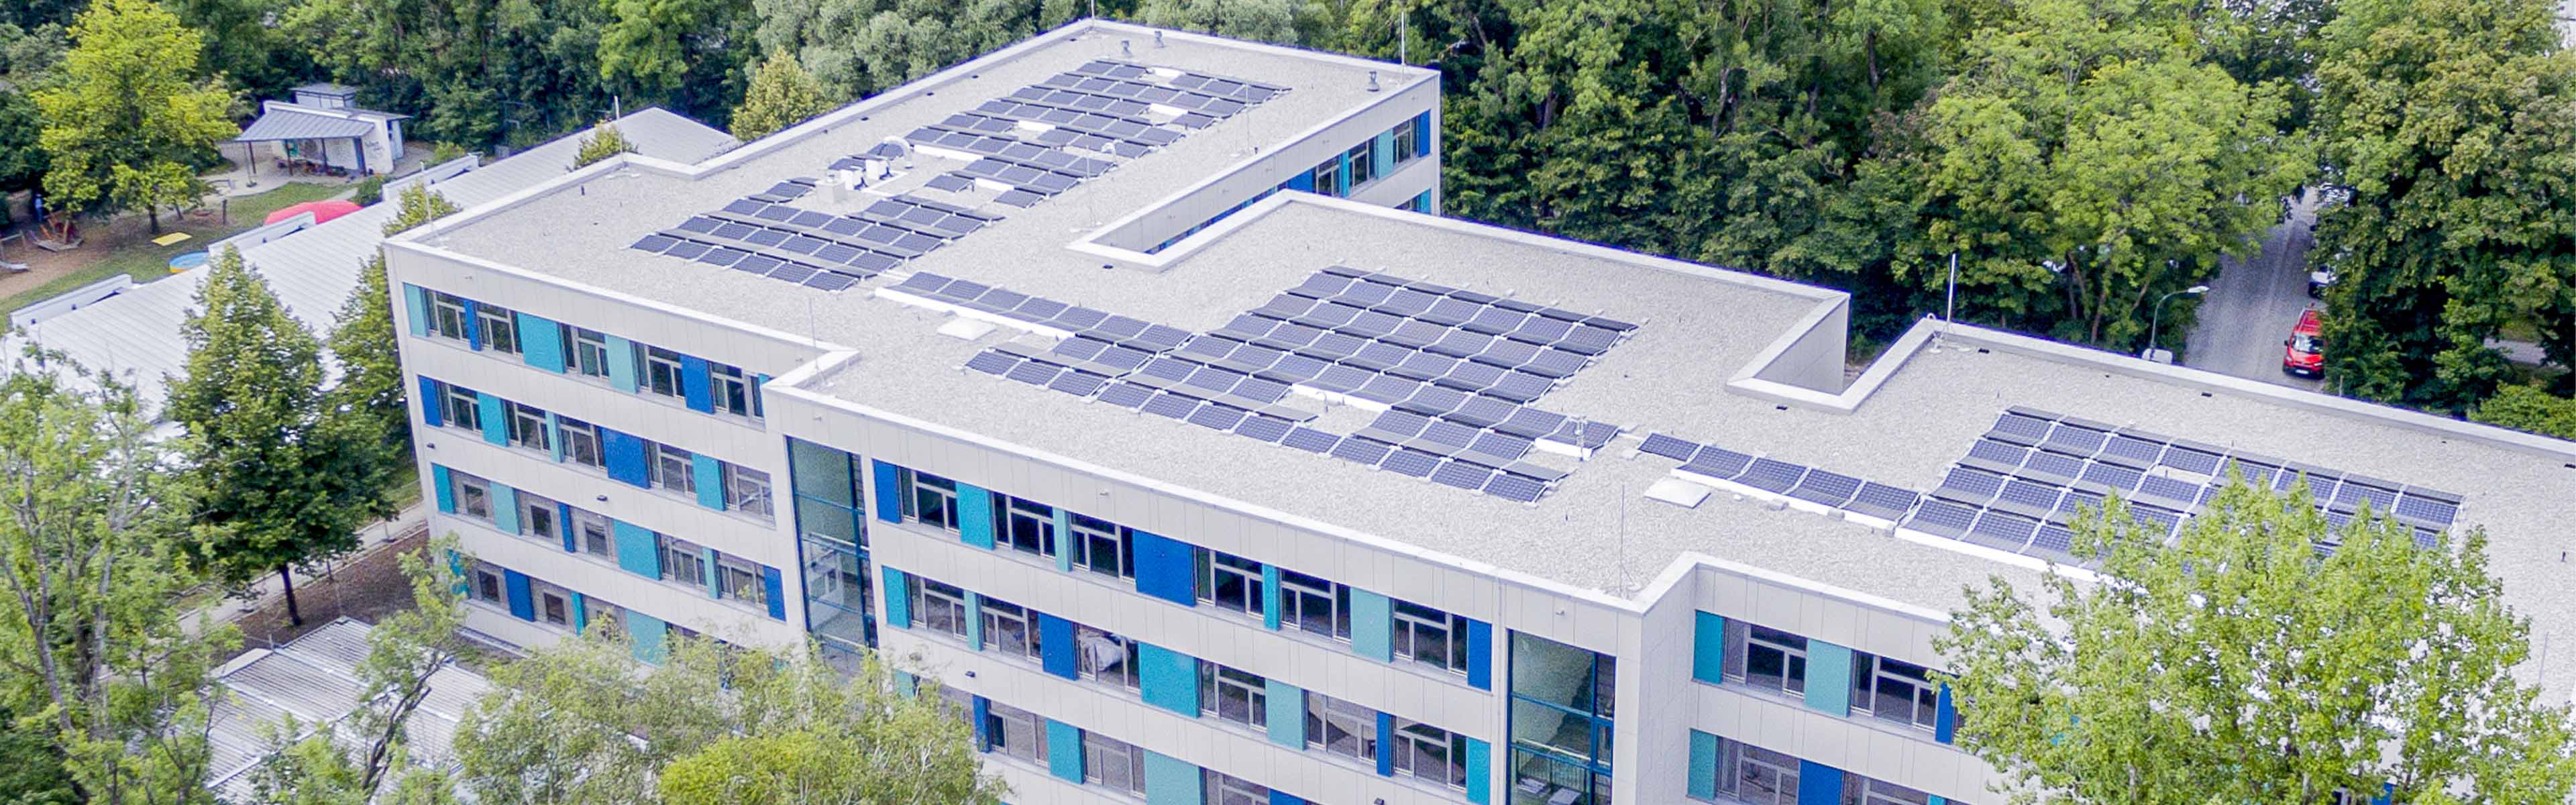 Großes Bürogebäude mit Solarmodulen auf dem Dach